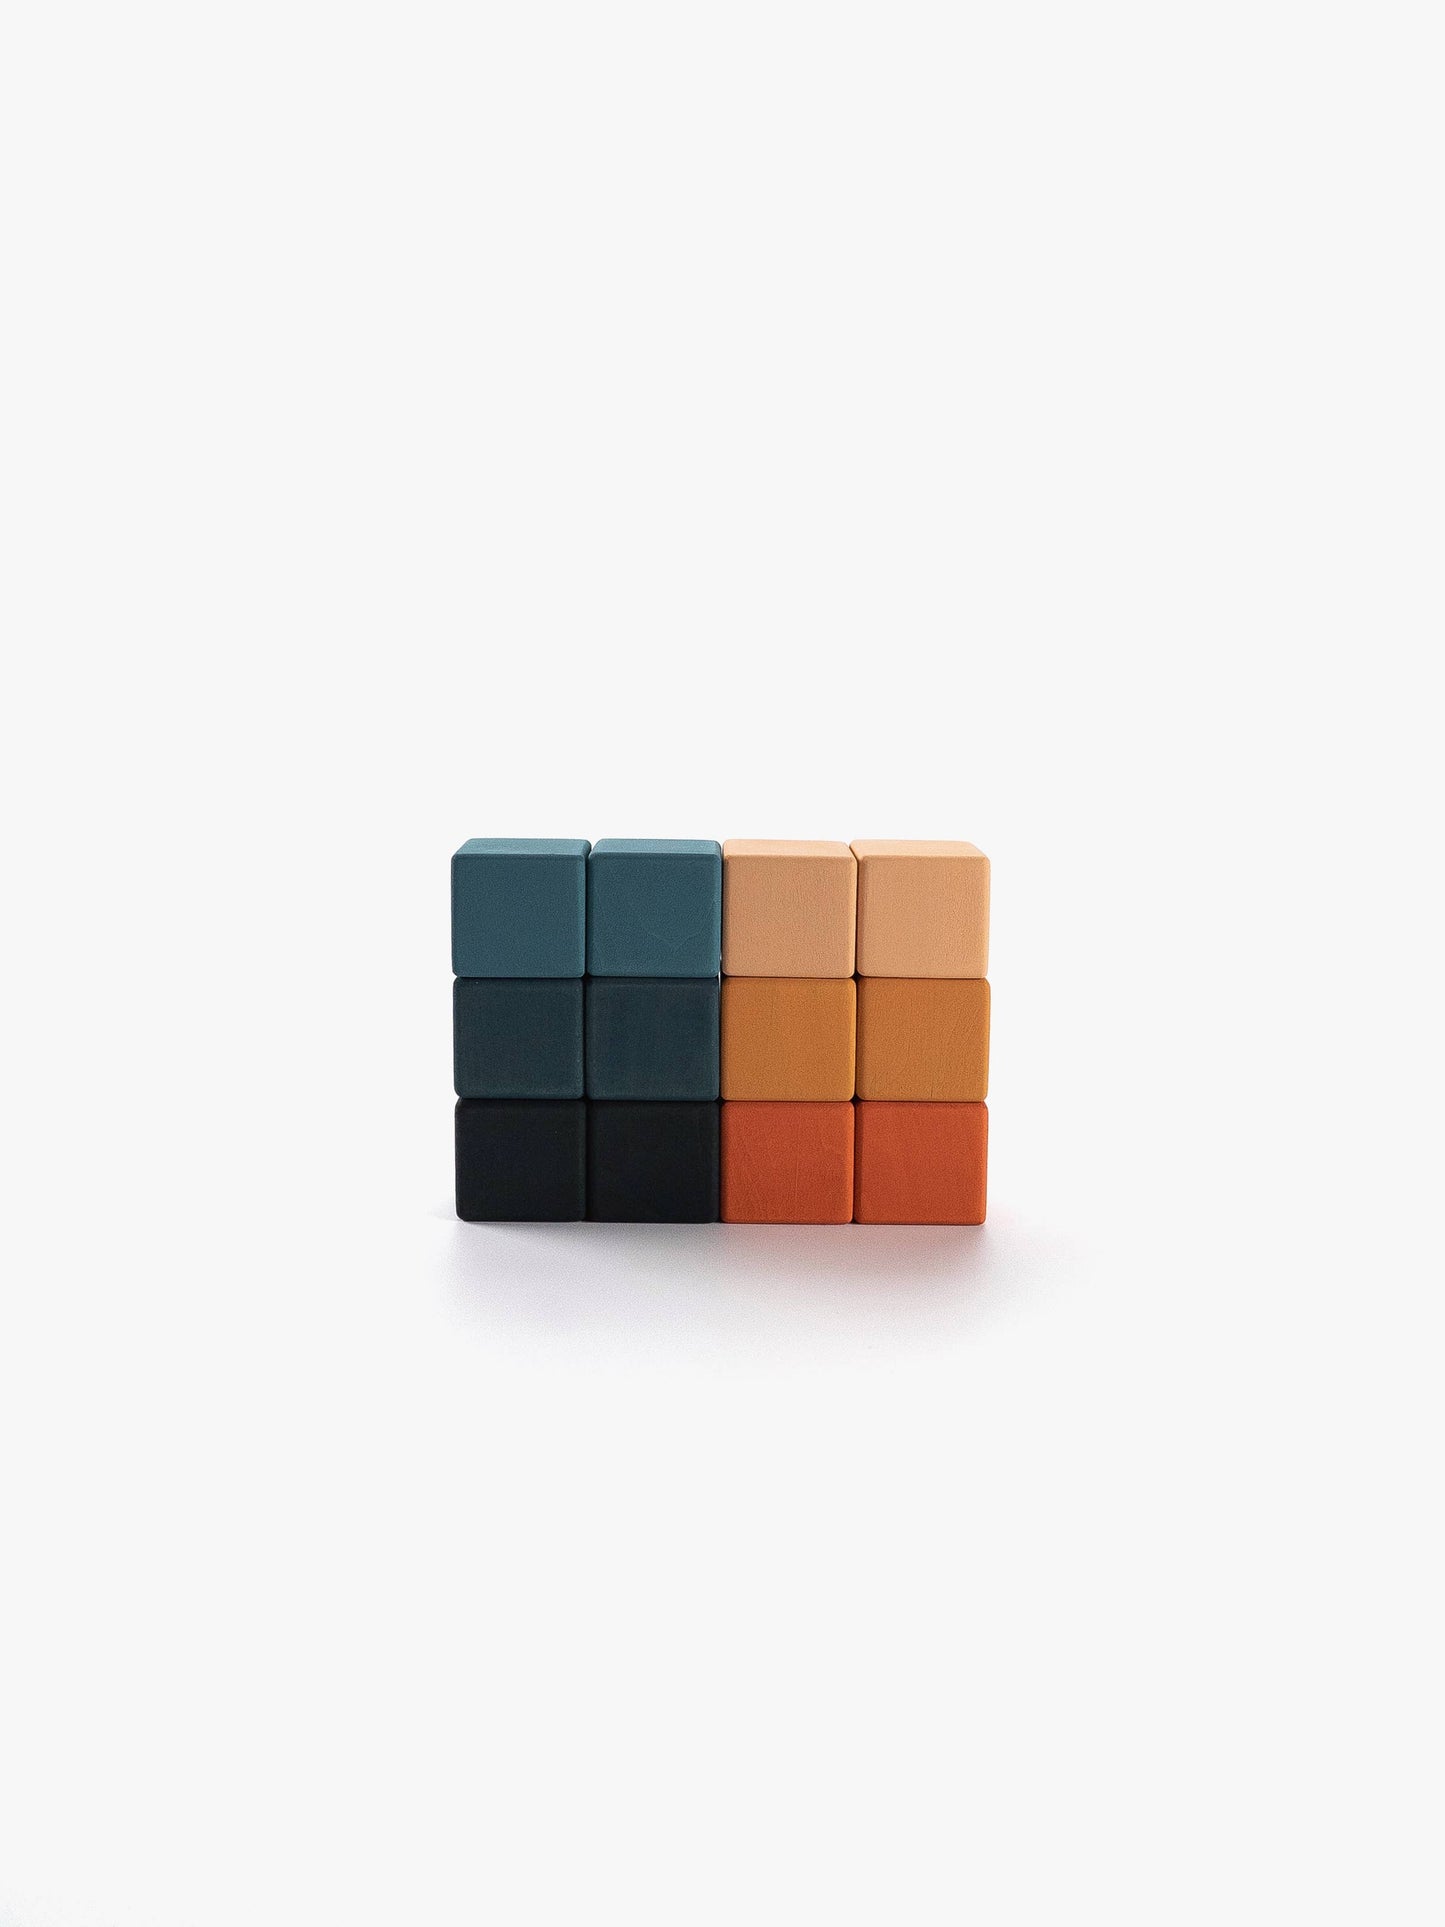 Wooden Mini Blocks Set by sago concepts lagoon- 12pcs